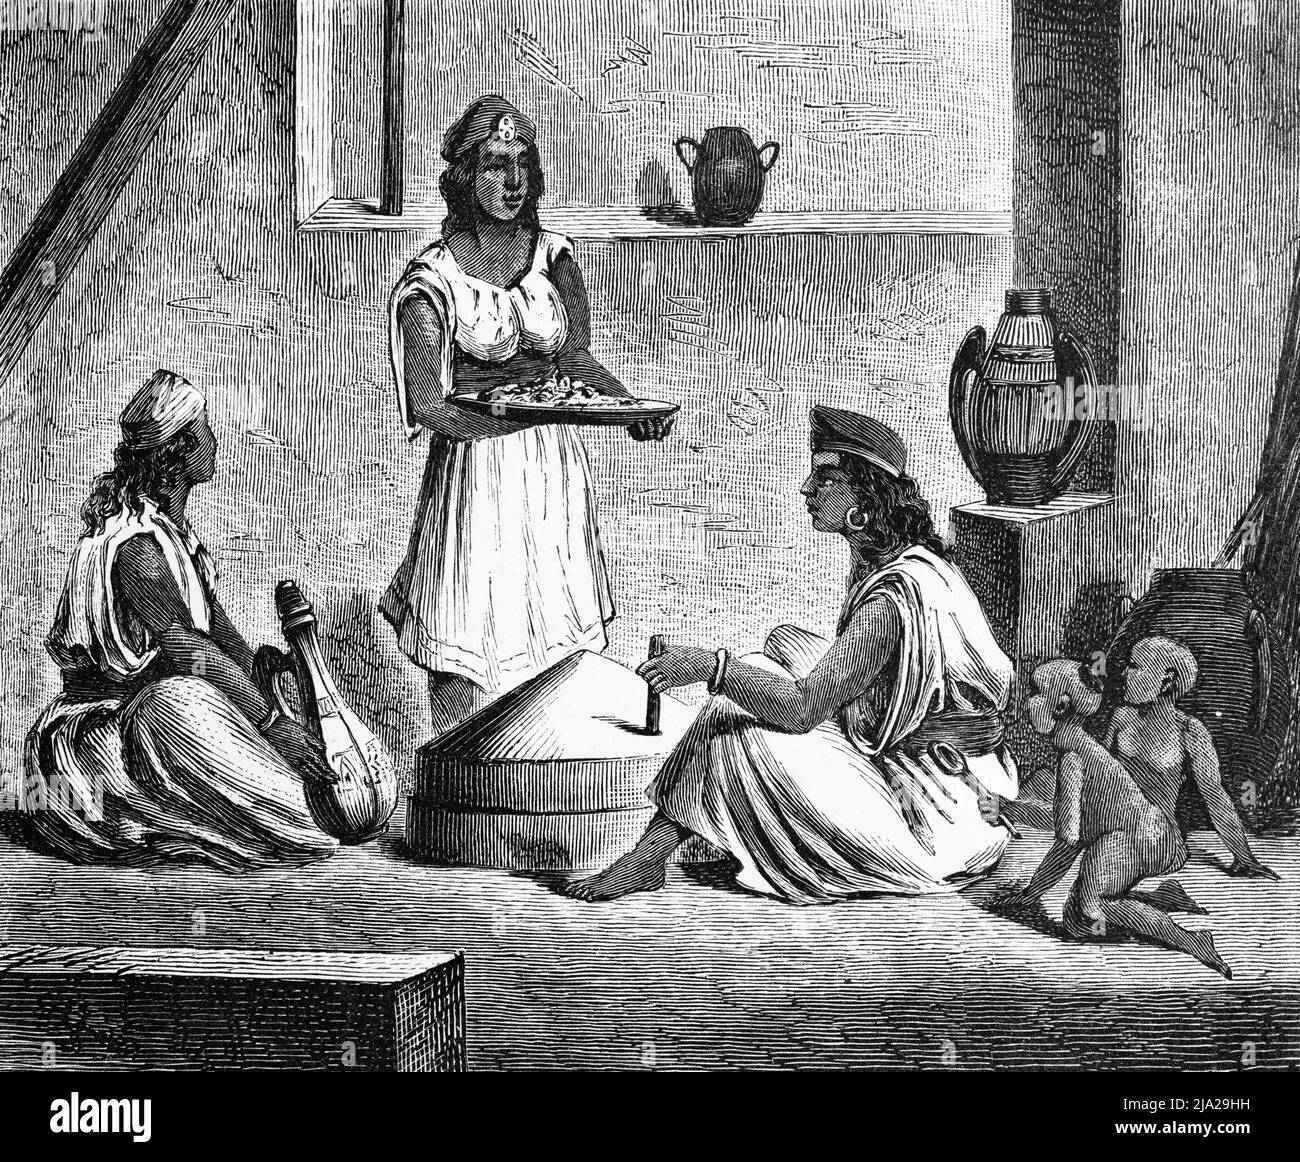 Trois femmes, Kabyles, Berber, deux petits enfants, costume traditionnel, bijoux, verseuse d'eau, conversation, assis, portrait, illustration historique Banque D'Images